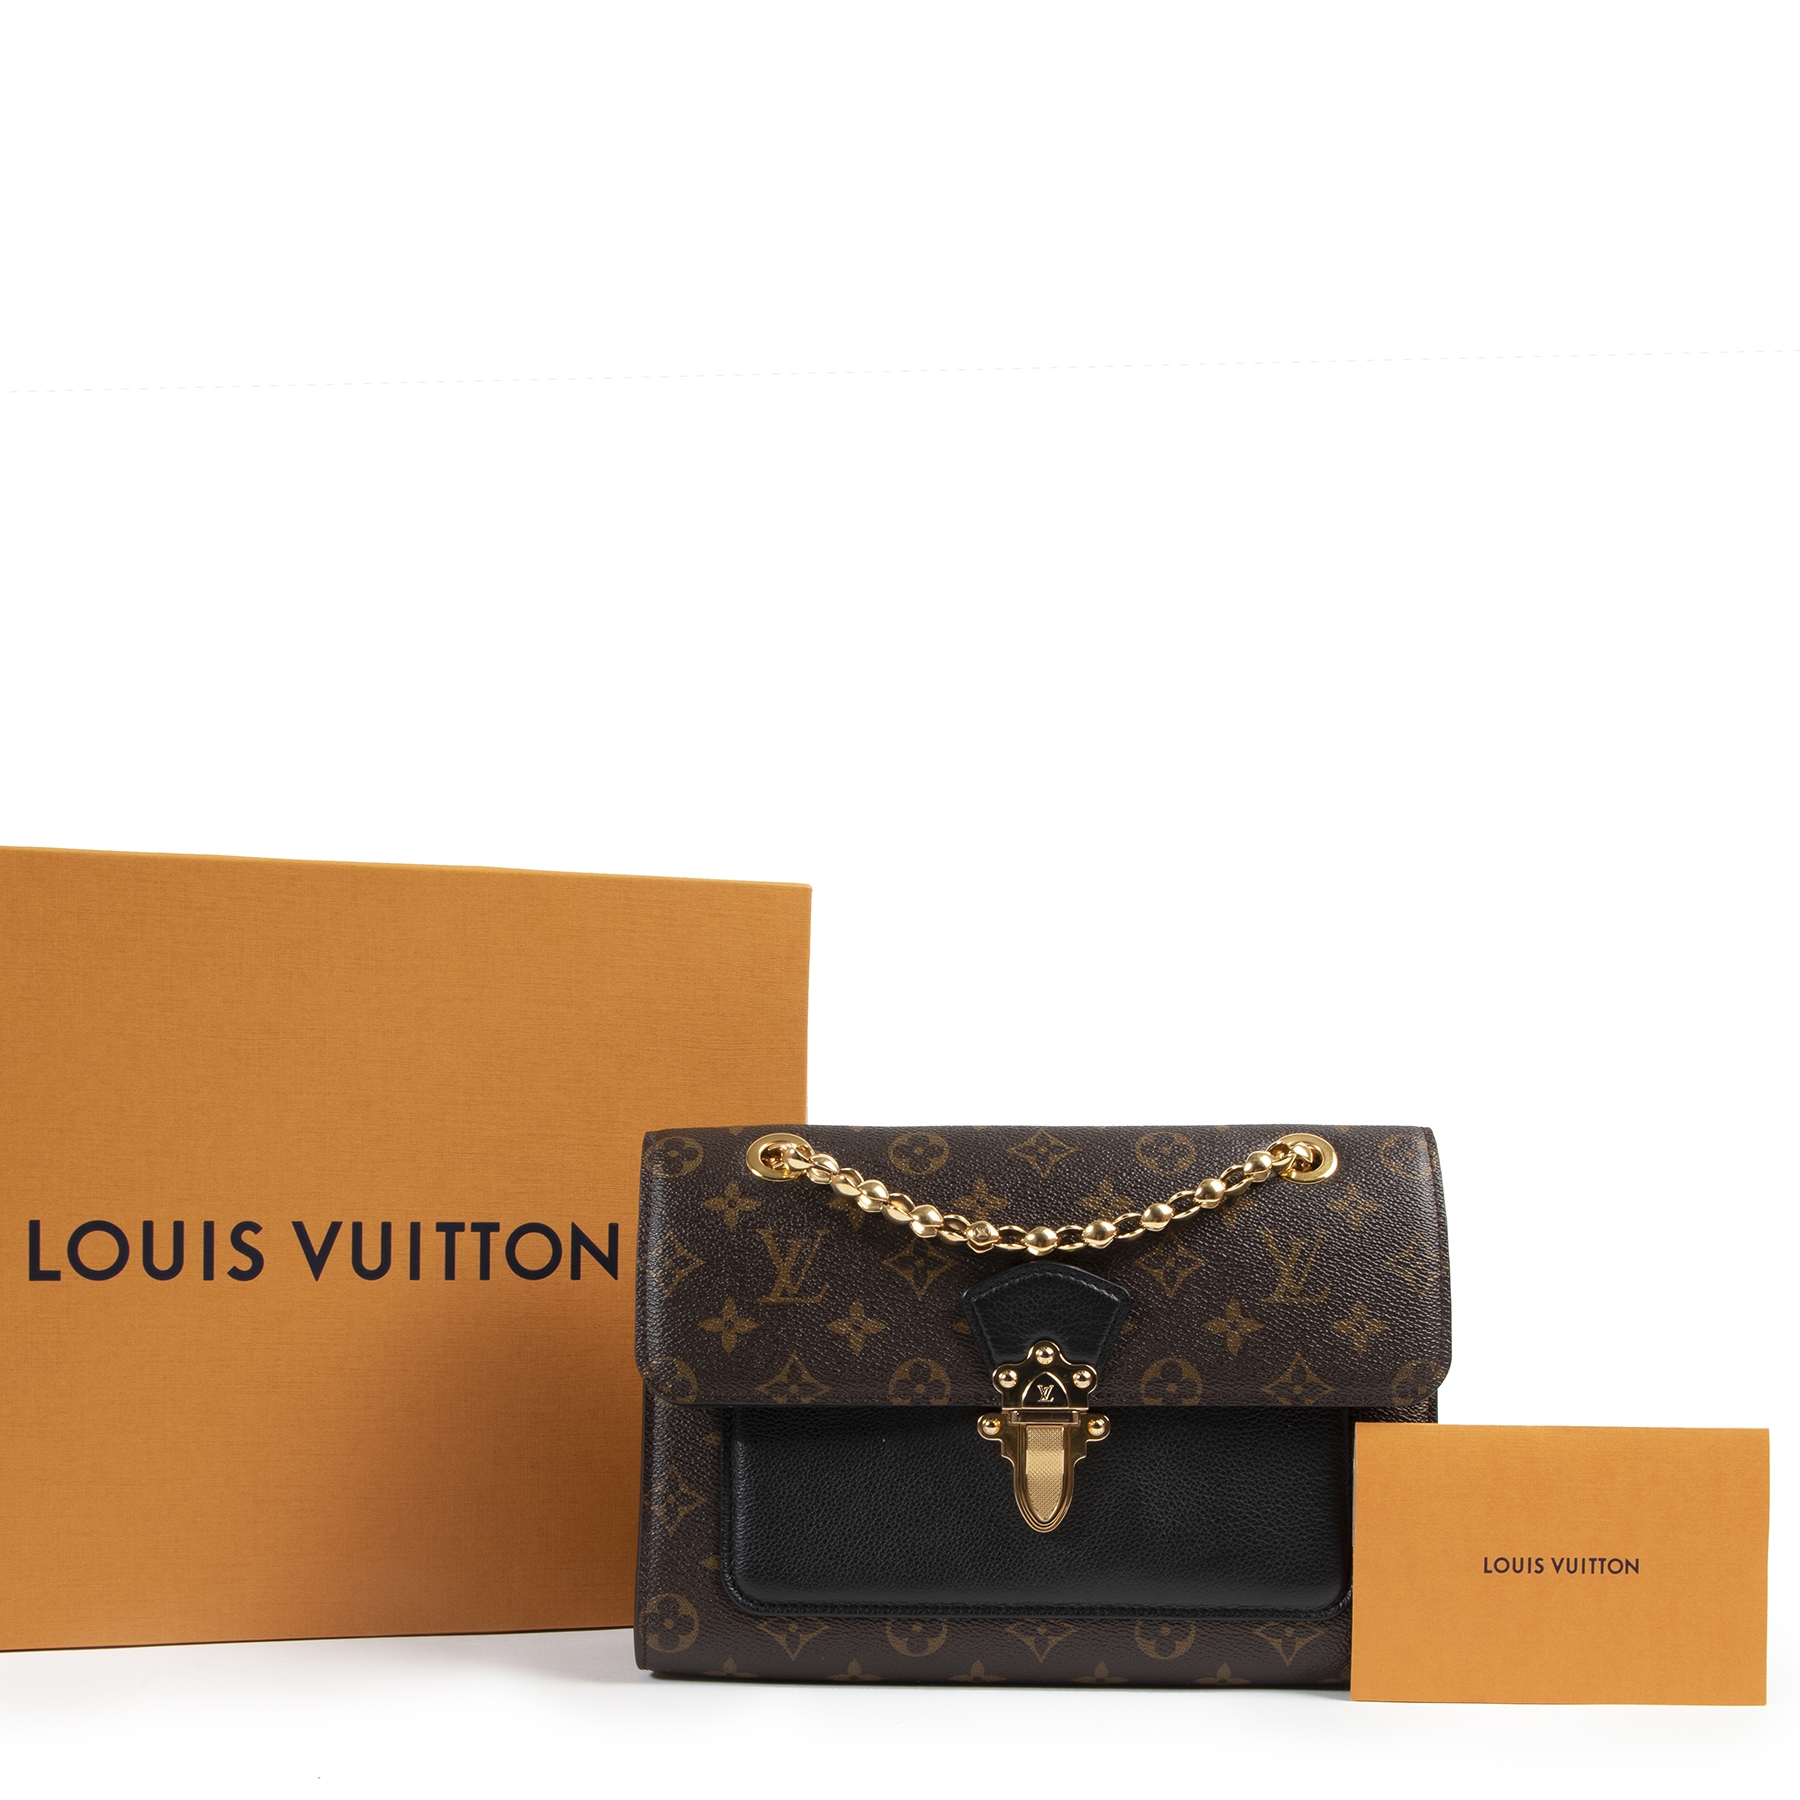 Louis Vuitton Victoire bag @jimsandkittys @louisvuitton ,  lousvuittonvictoire ,louisvuittonvictoirebag , victoireba…